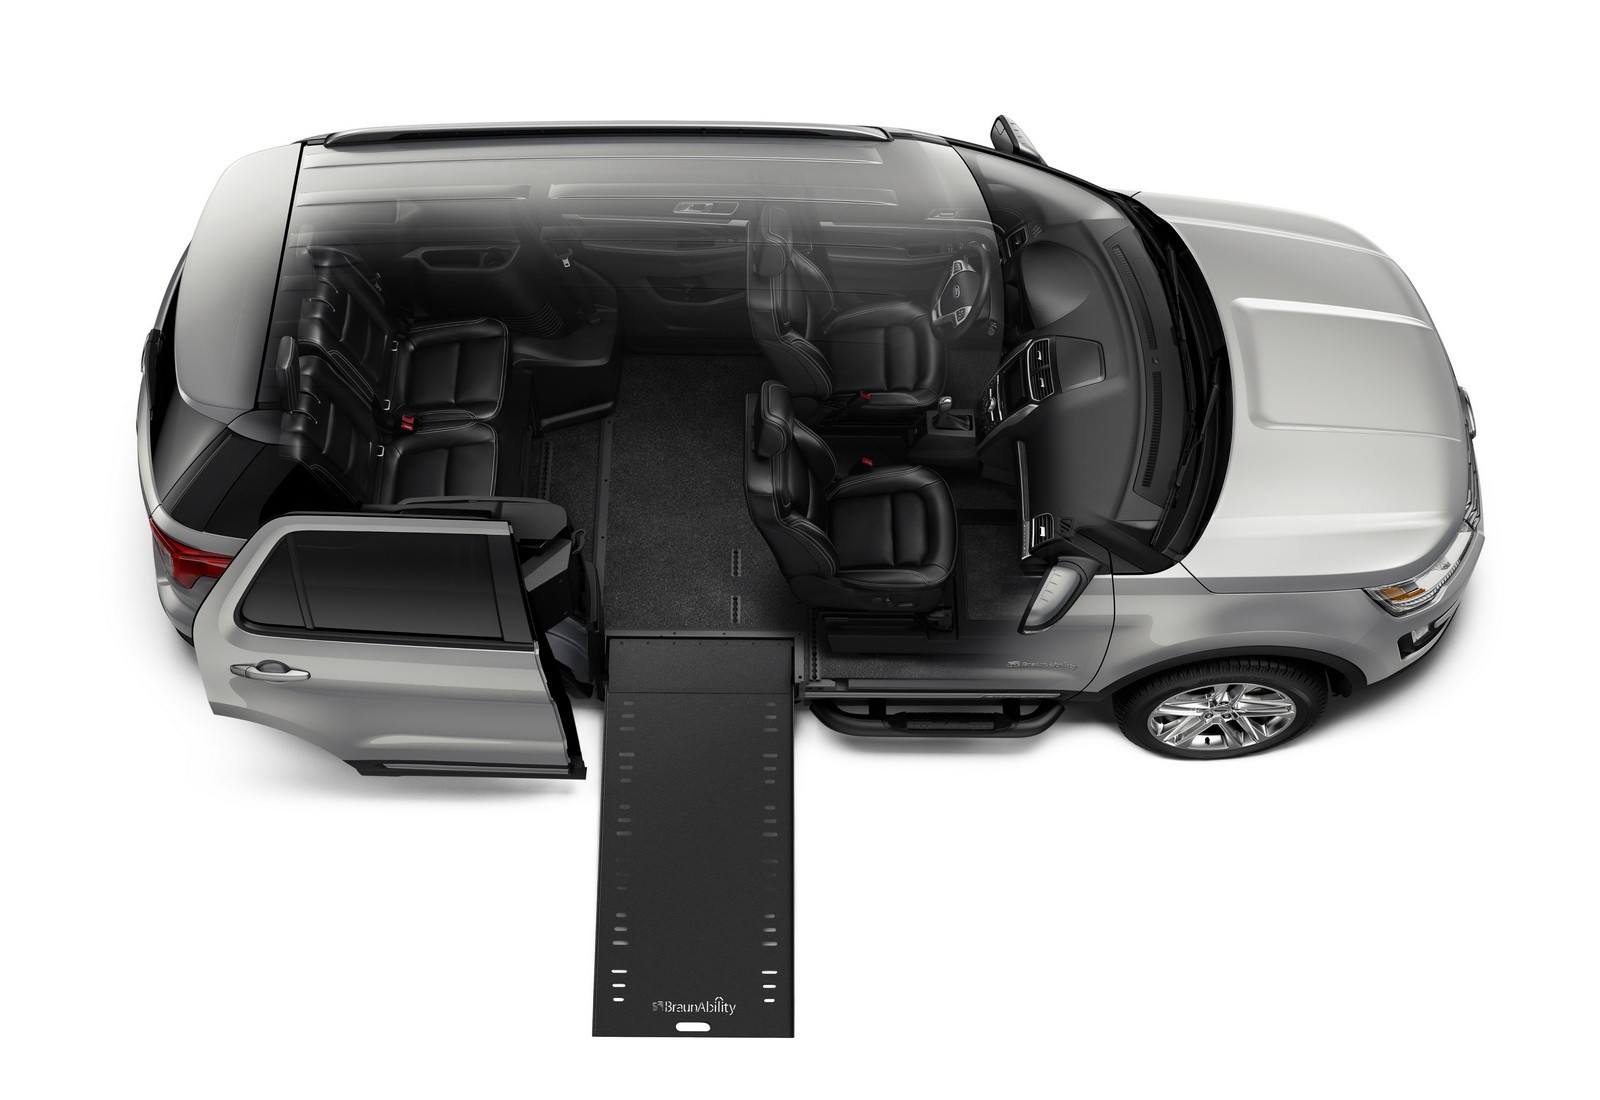 "فورد" تطلق سيارتها اكسبلورر 2016 الخاصة بذوي الاحتياجات الخاصة "صور ومواصفات" Ford 4